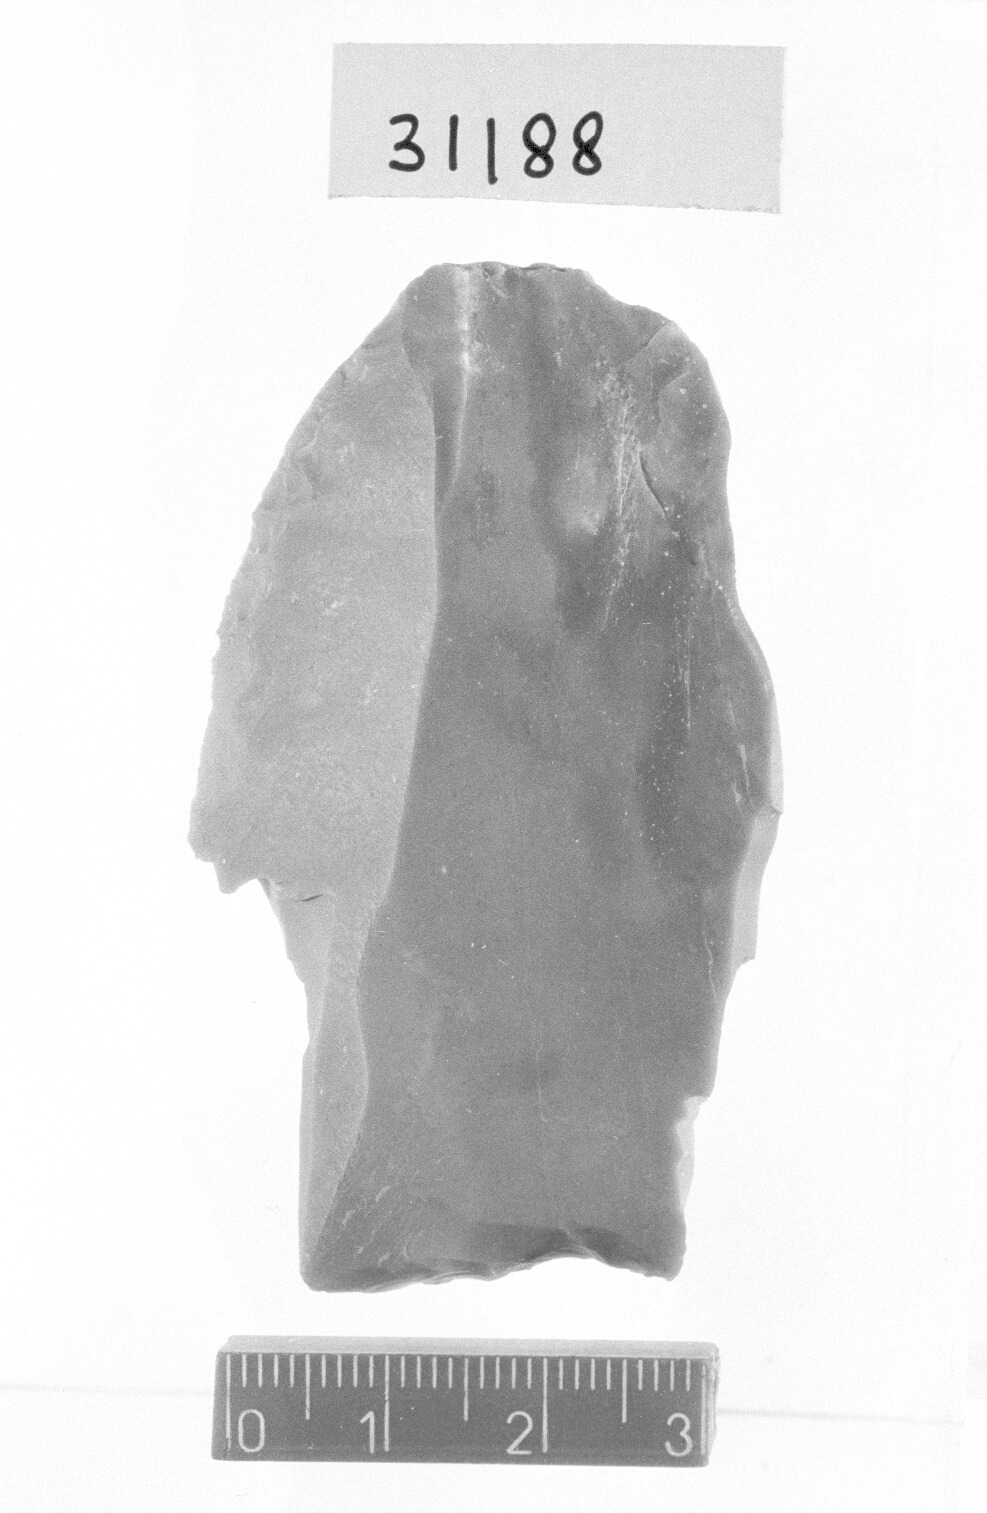 bulino gemino a stacco laterale su ritocco - Gravettiano (Paleolitico superiore)